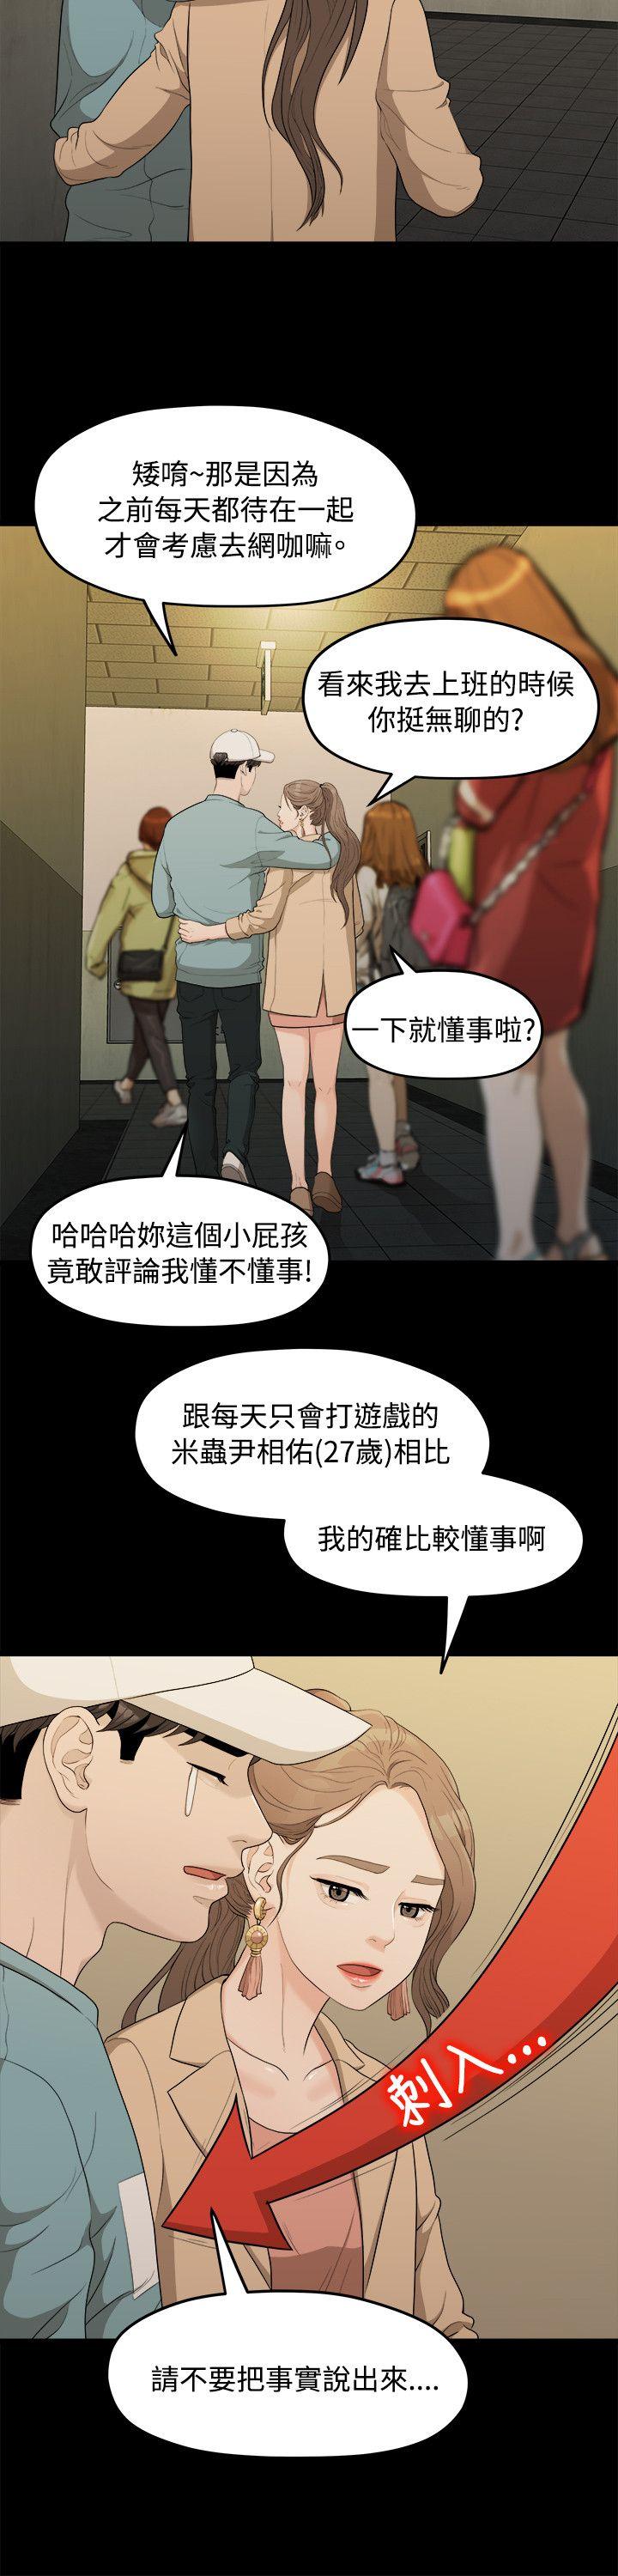 韩国污漫画 我們的非常關系 第6话 19